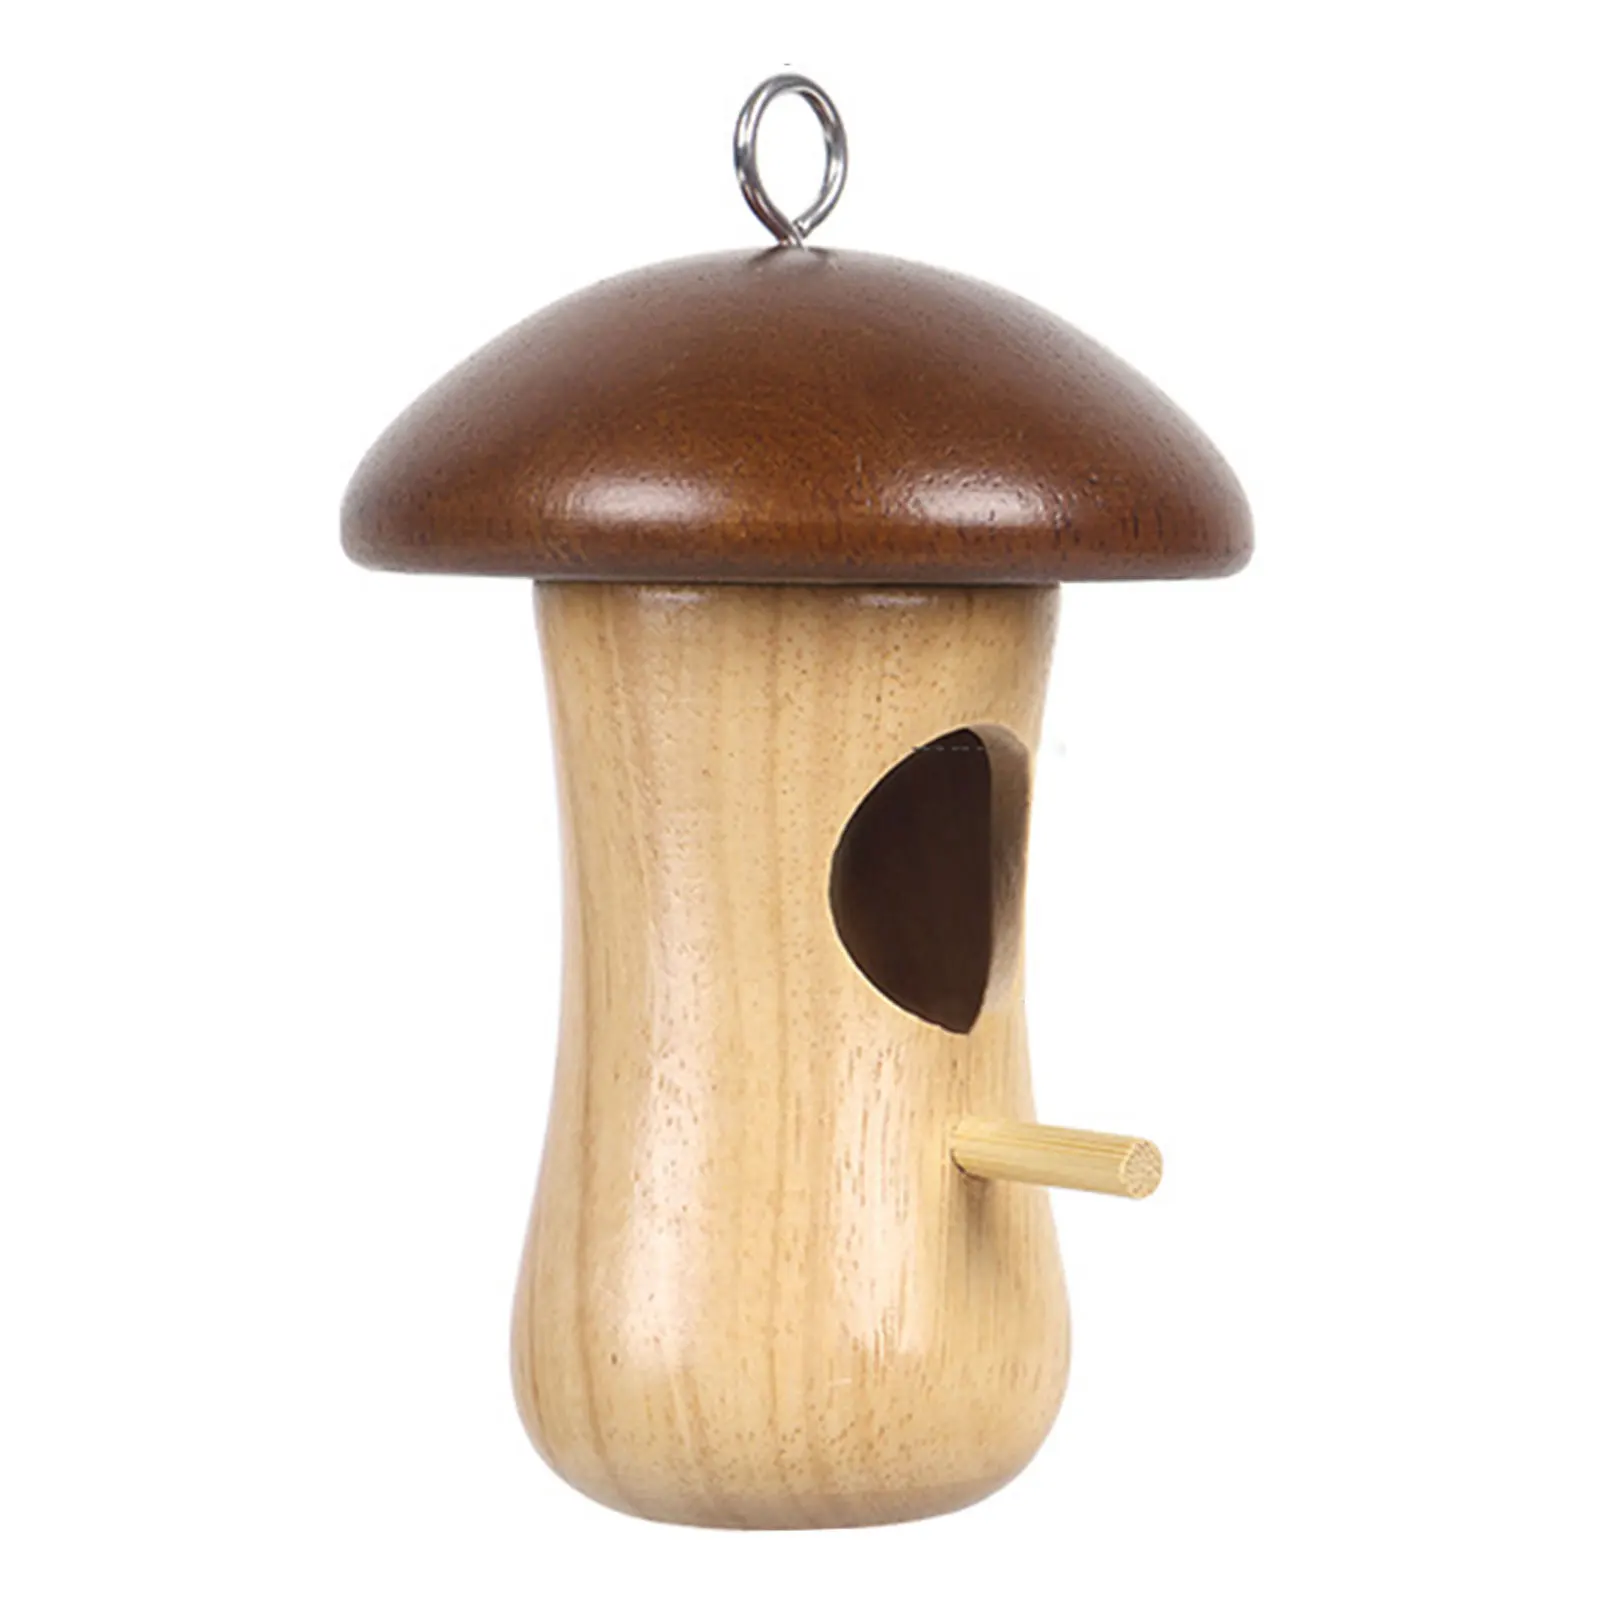 

Садовый деревянный домик-Колибри, пасторальная декоративная кормушка для птиц для украшения сада, заднего двора